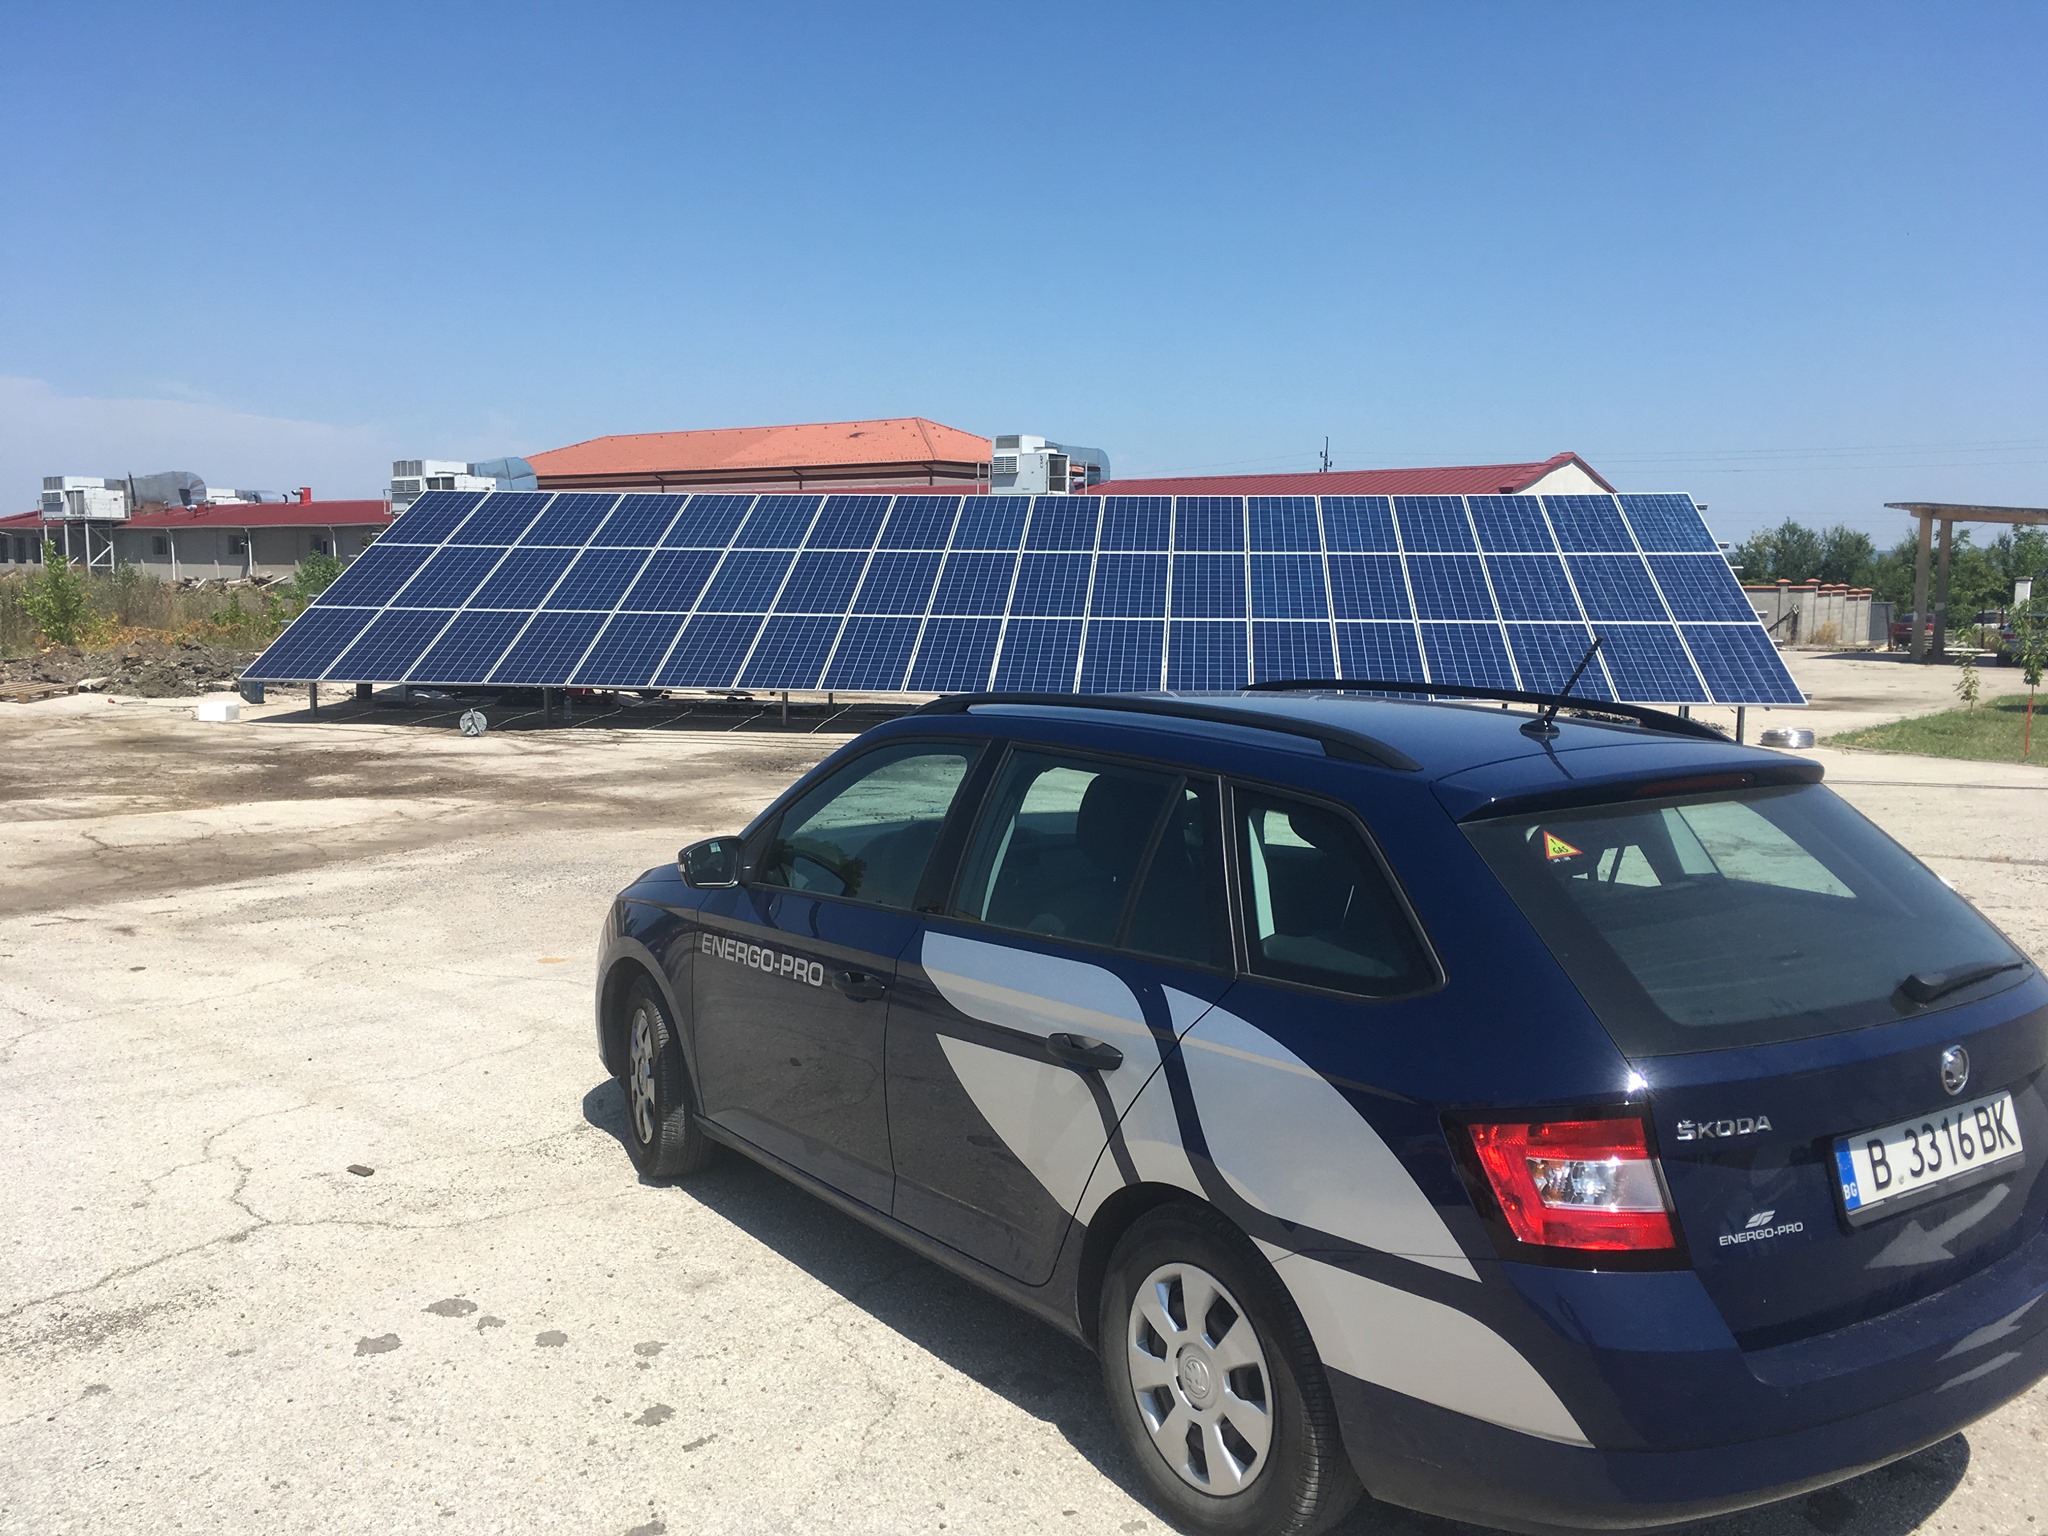 Solar parks Prity (59,4 kWp) - Gorna Oryahovizta and Lyaskovetz